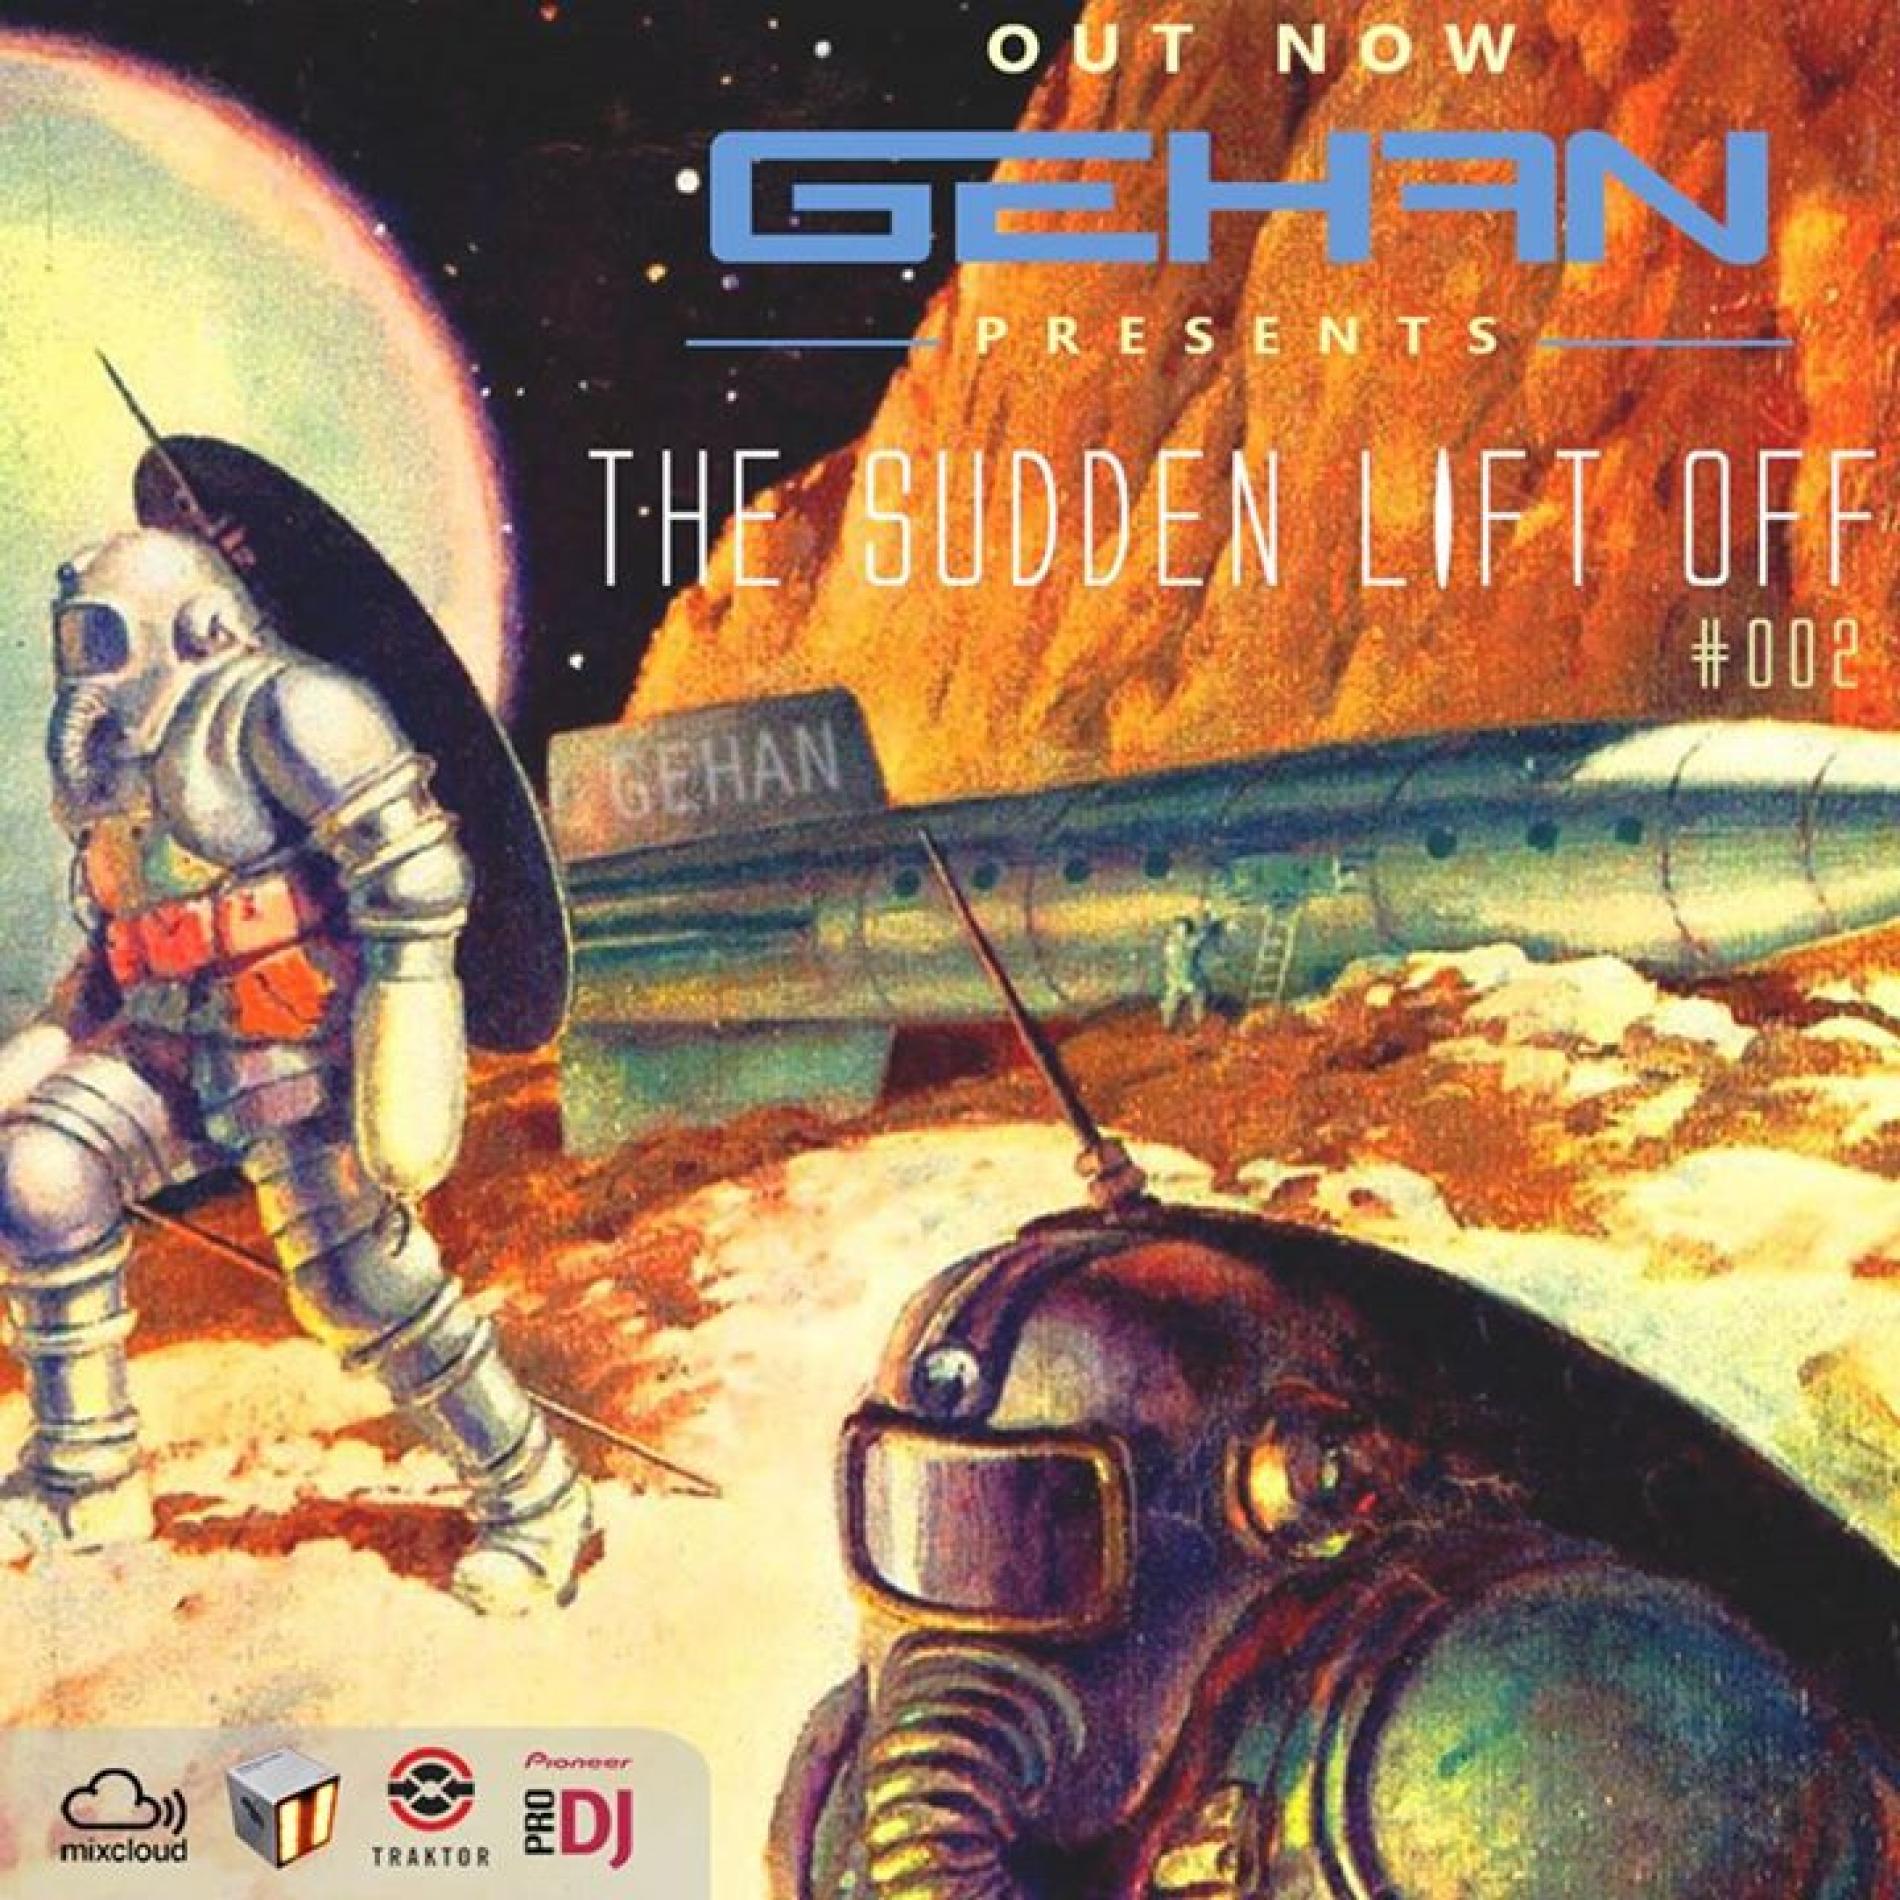 GEHAN – The Sudden Lift Off – #002